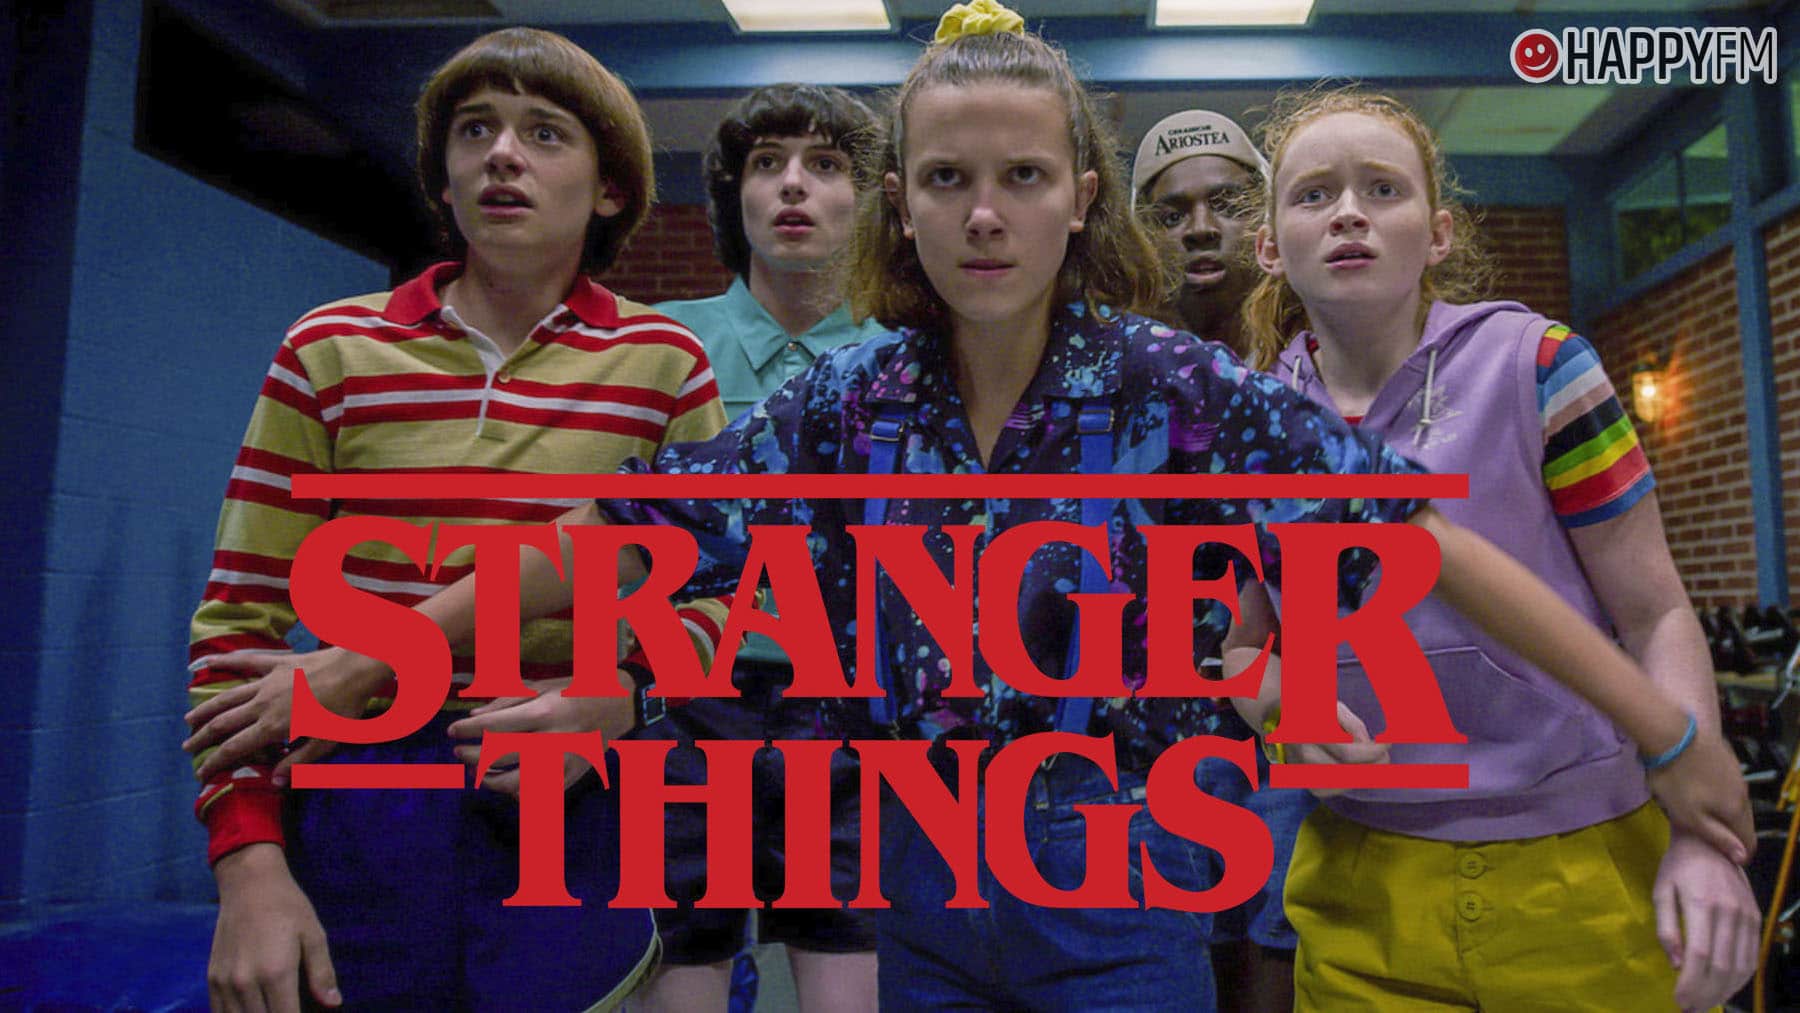 ‘Stranger Things’: el sorprendente cambio físico de sus protagonistas en sus 4 temporadas